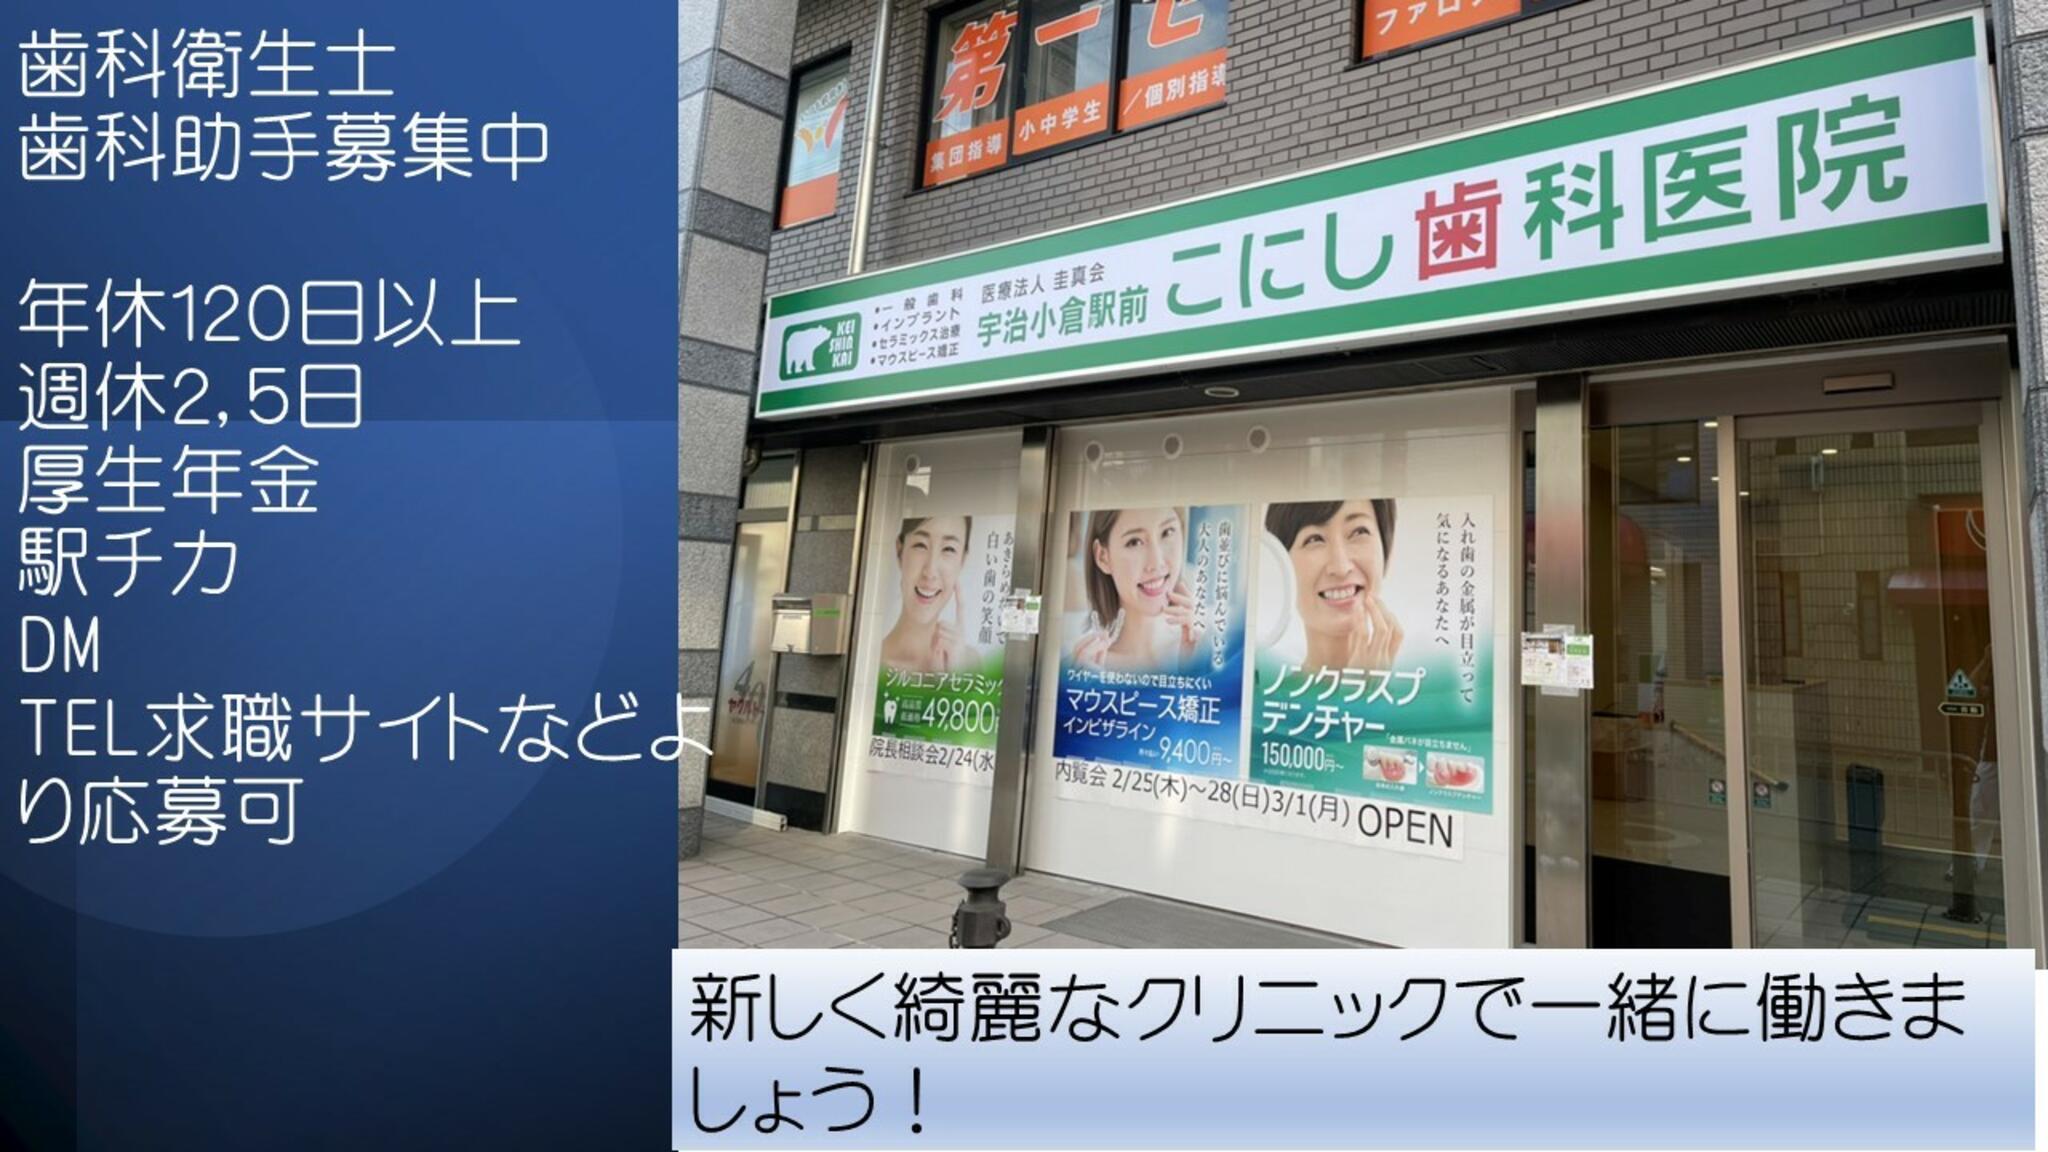 宇治小倉駅前 こにし歯科医院からのお知らせ(スタッフ募集)に関する写真